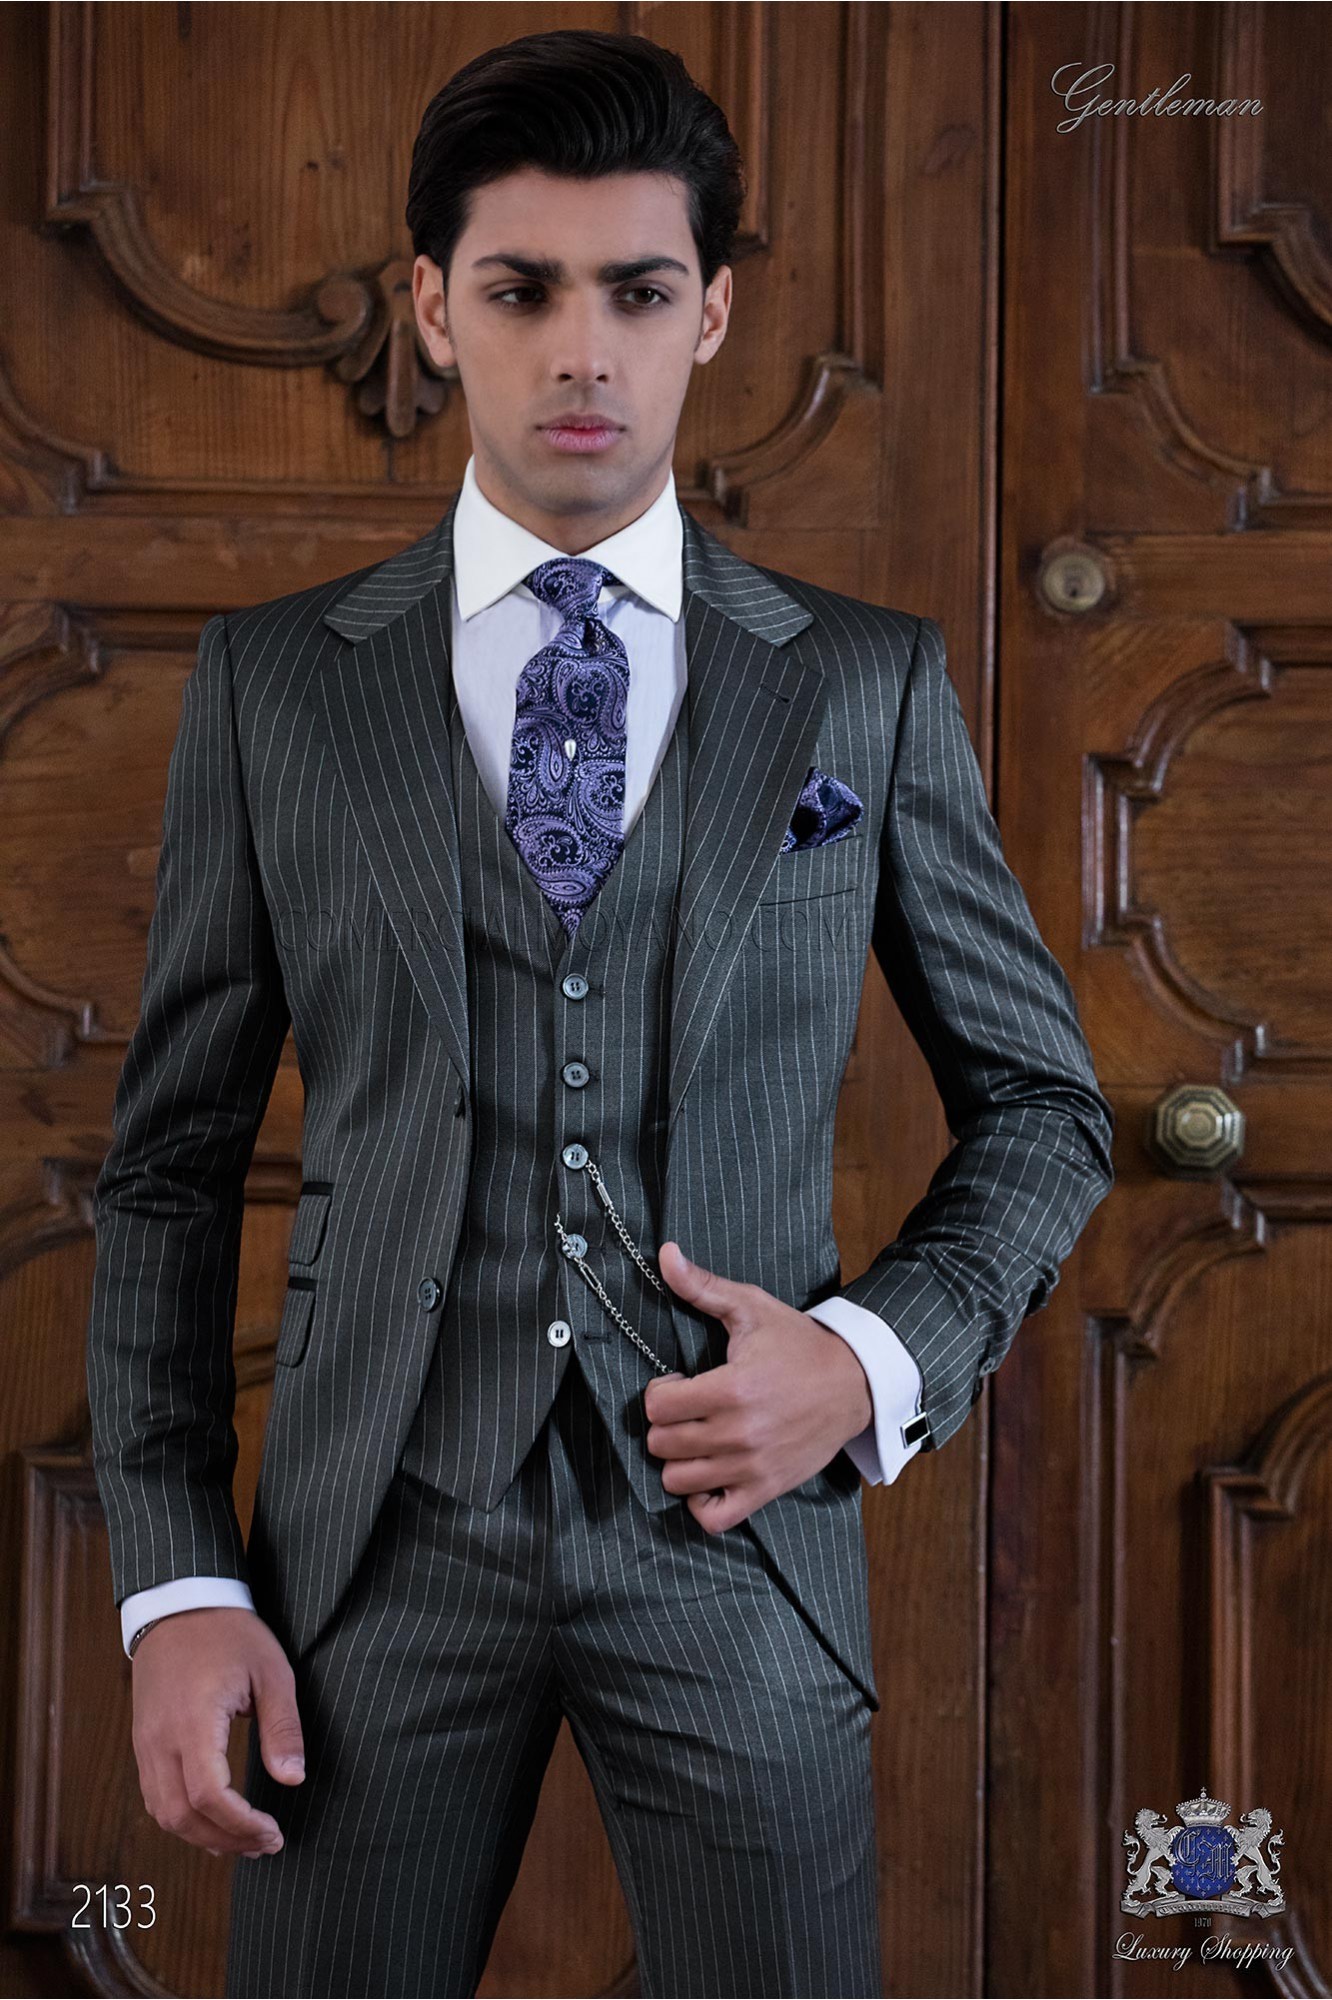 Traje raya diplomática gris modelo: 2133 Mario Moyano colección Gentleman